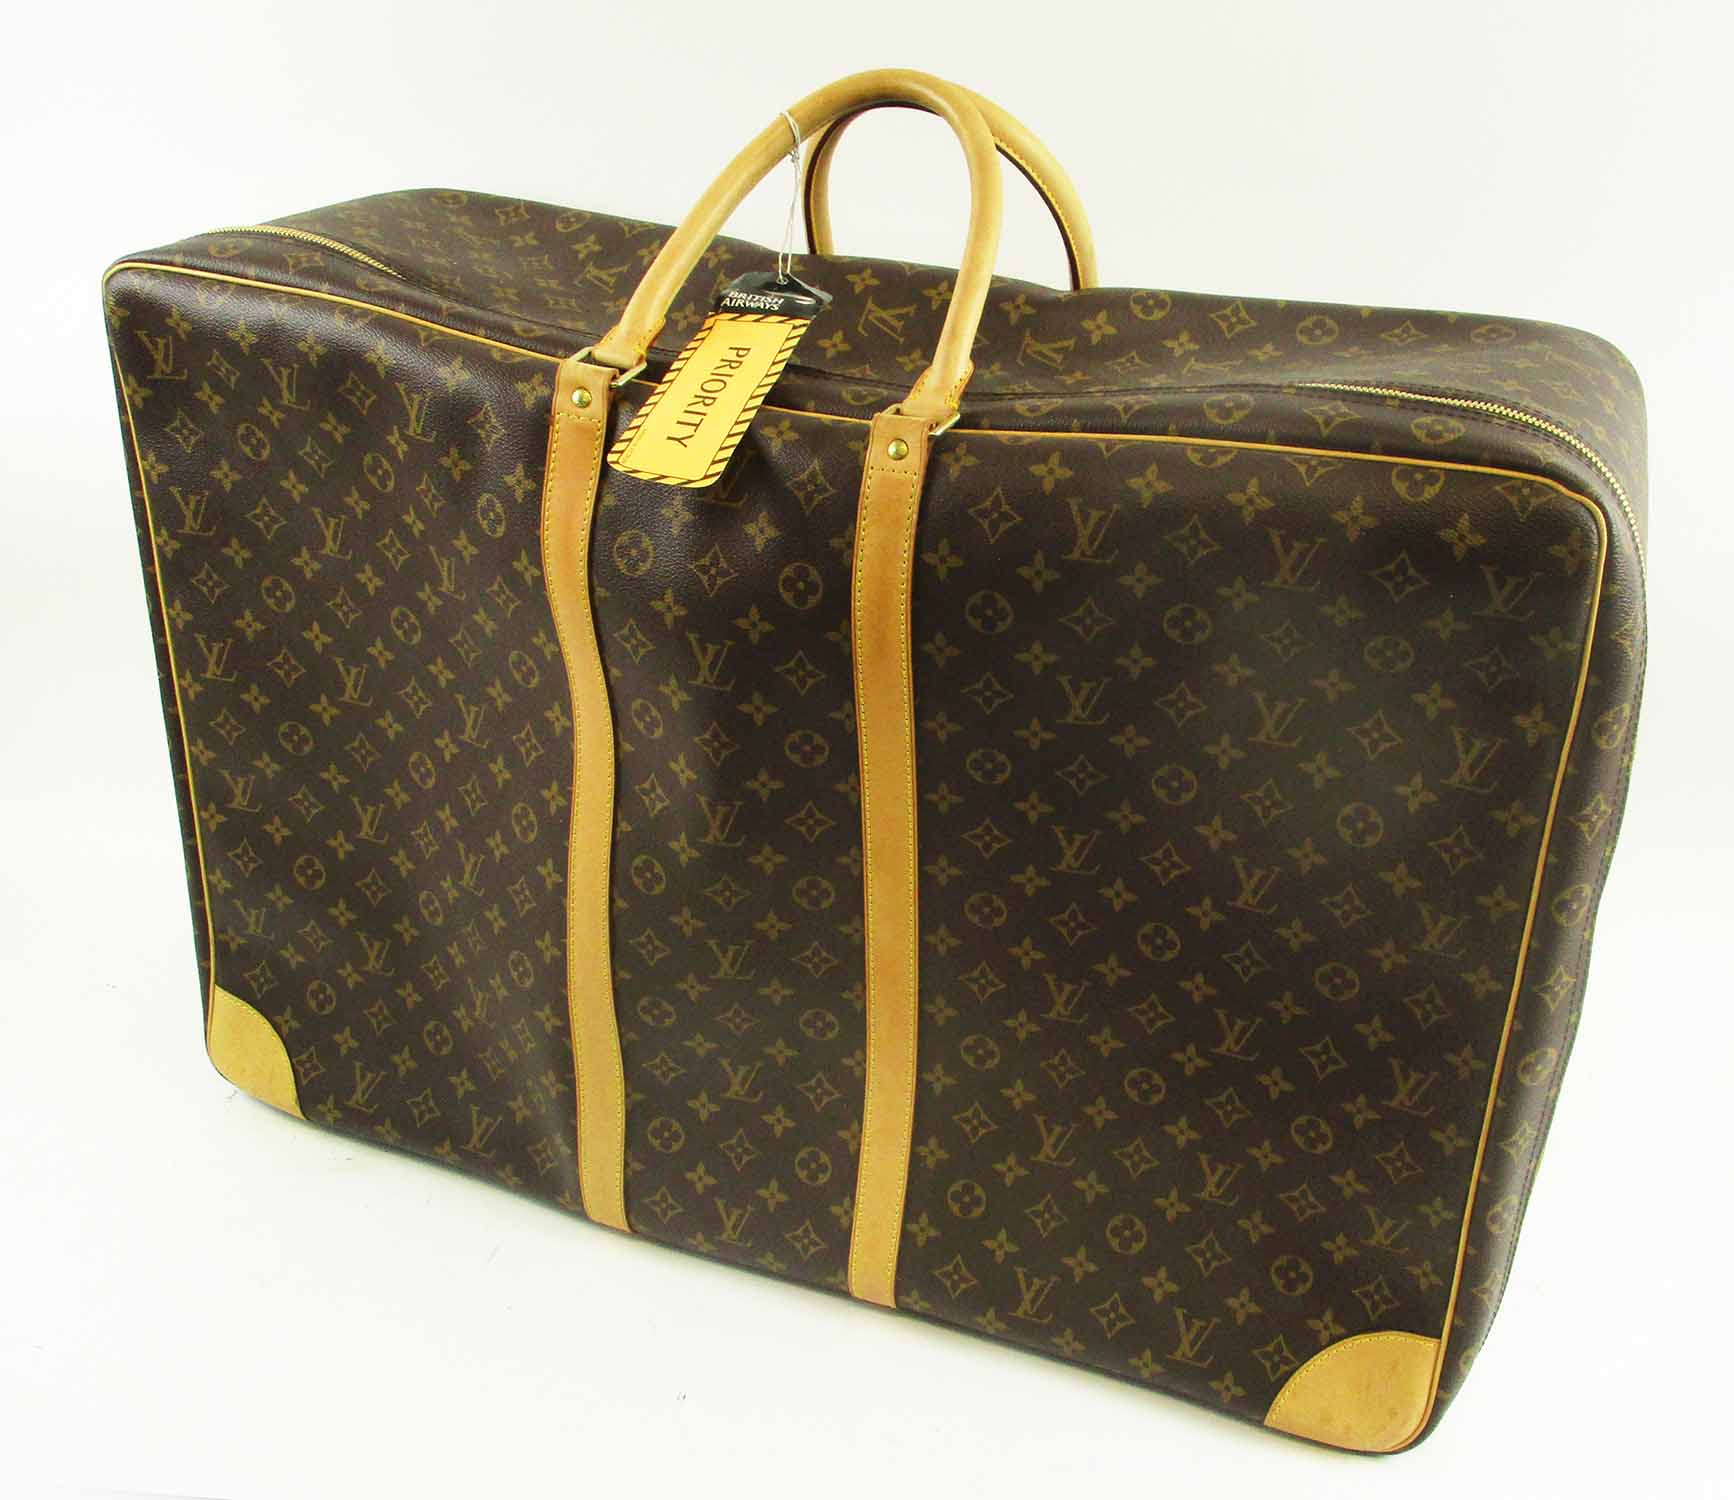 Sold at Auction: Louis Vuitton Monogram Sirius Suitcase 65